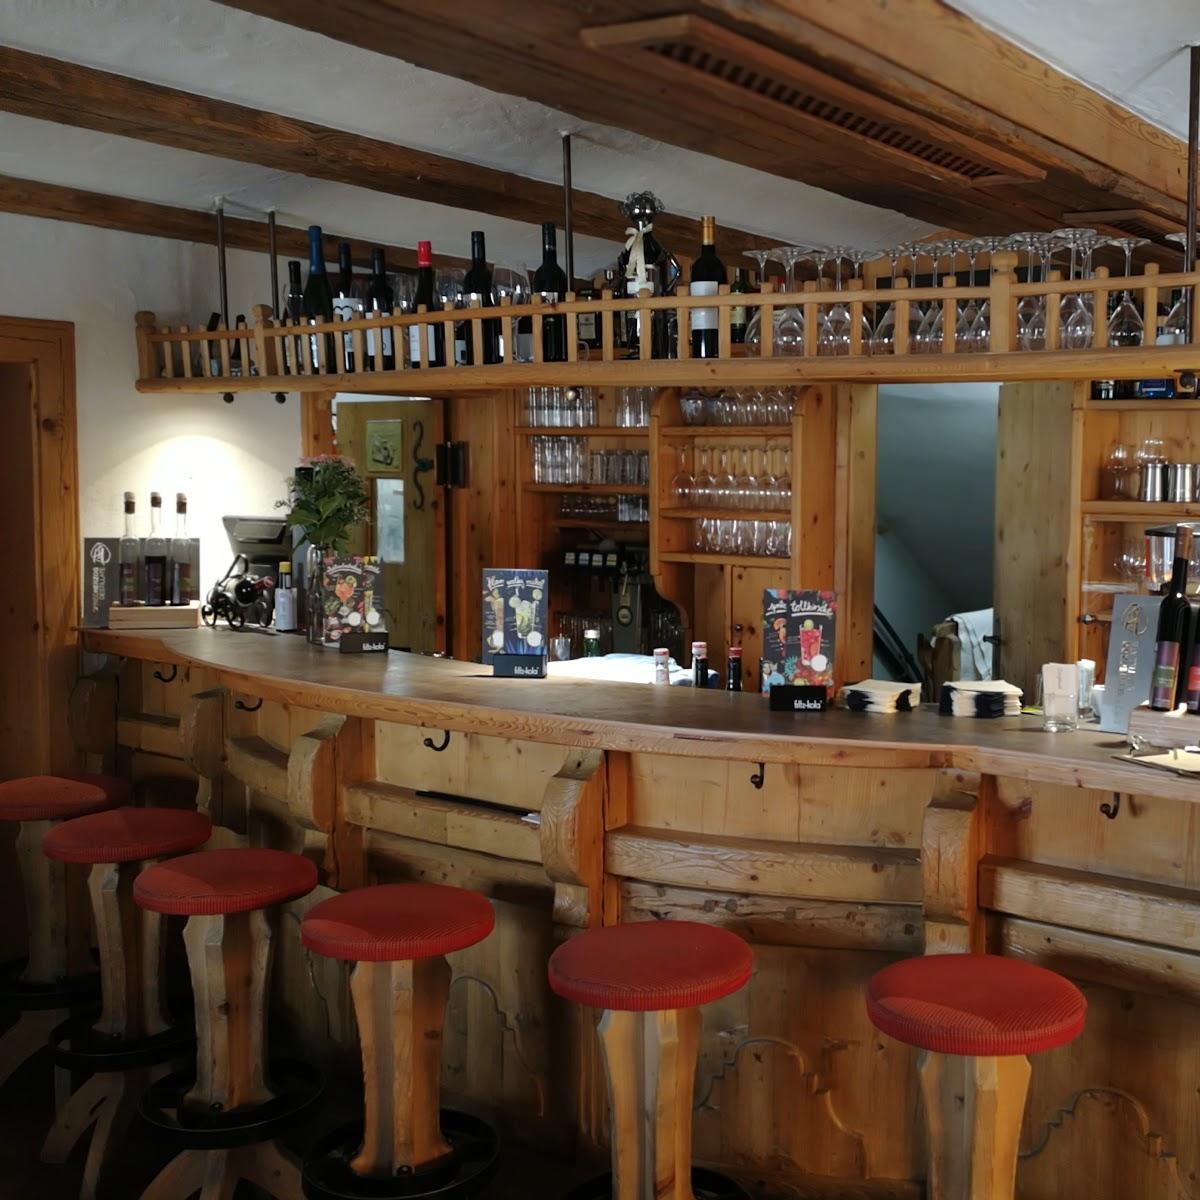 Restaurant "Dorfstadl Bar Kirchdorf" in Kirchdorf in Tirol